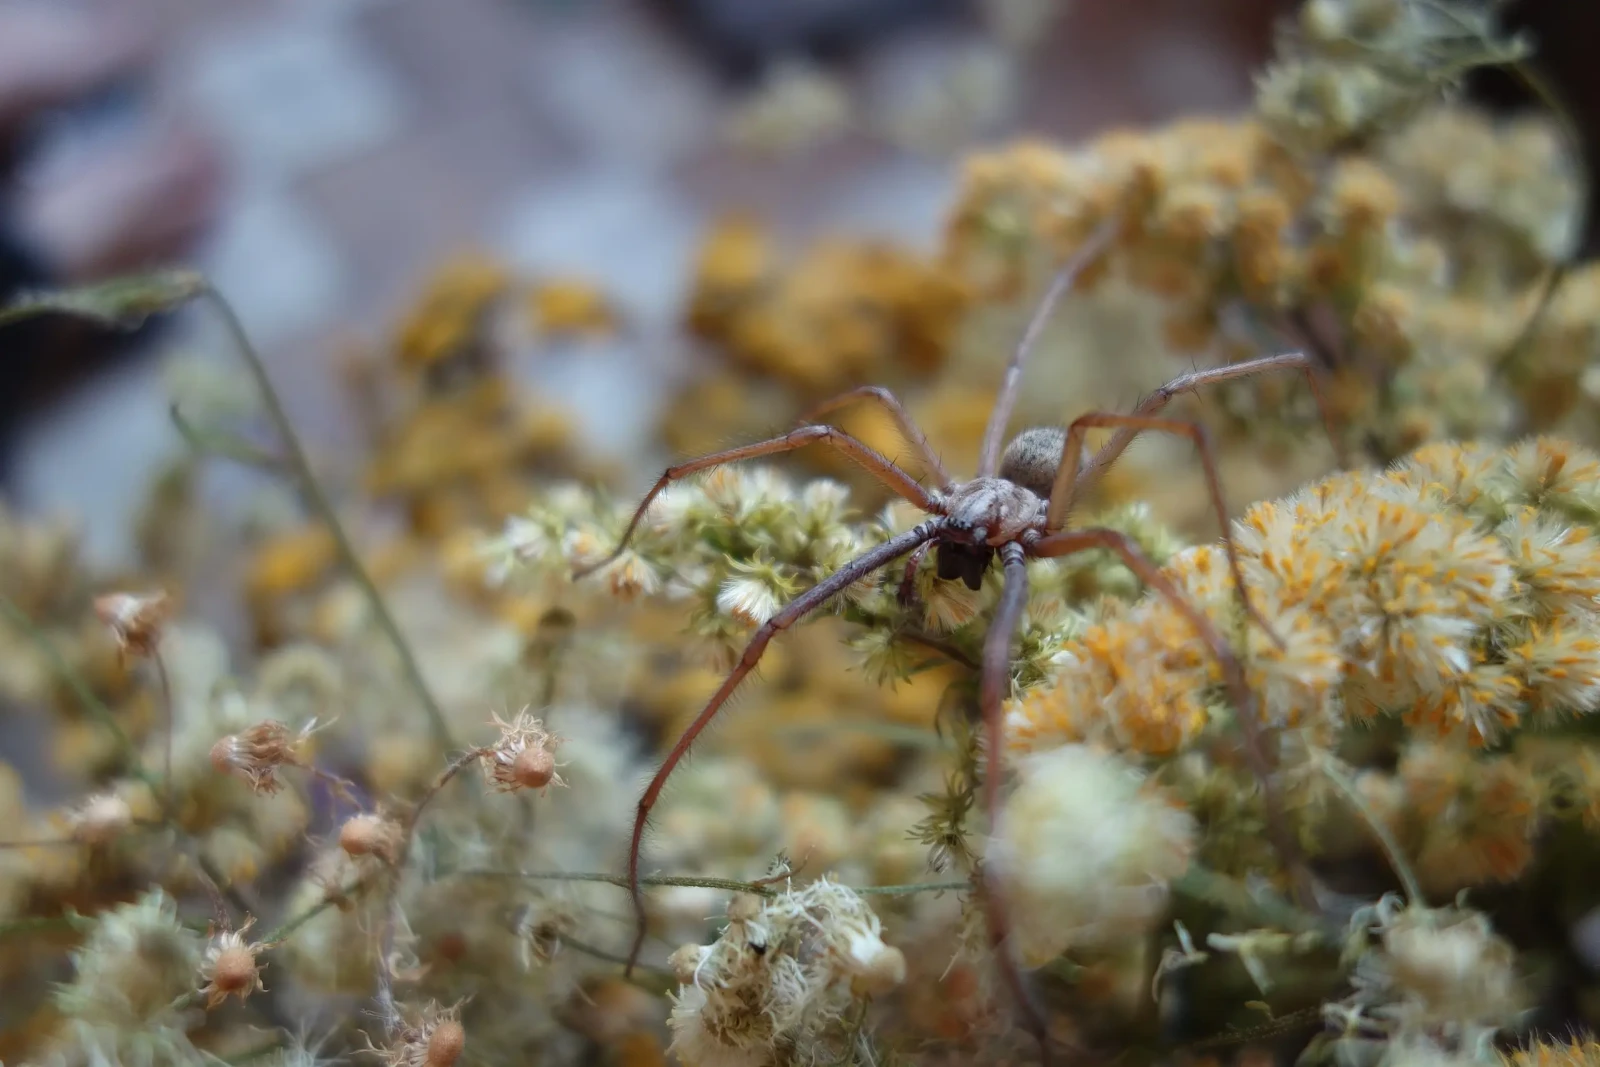 La tégénaire noire: Comment vivre en harmonie avec cette araignée bénéfique